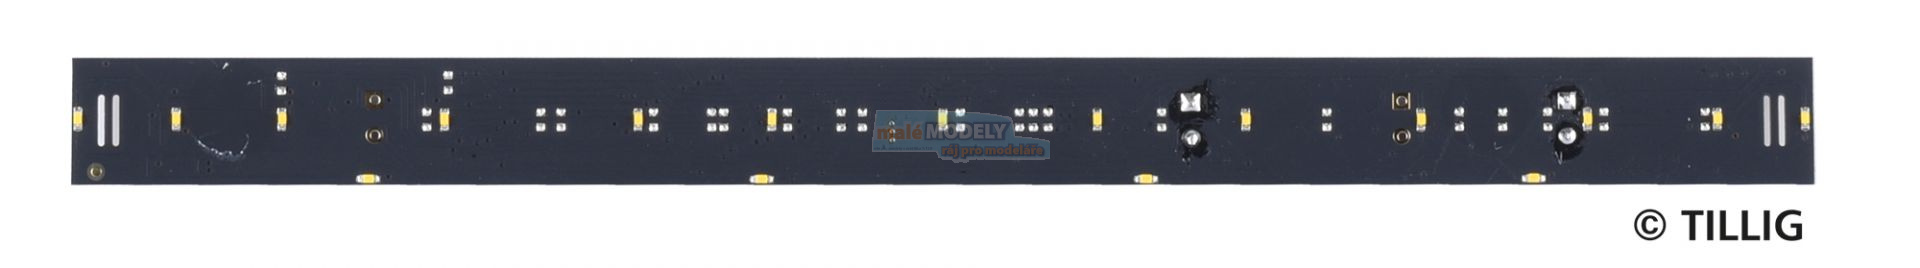 LED-Innenbeleuchtung analog / digital Bausatz für Reisezugwagen 1. Klasse, 1./2. Klasse Typ B, Y, Y/B70